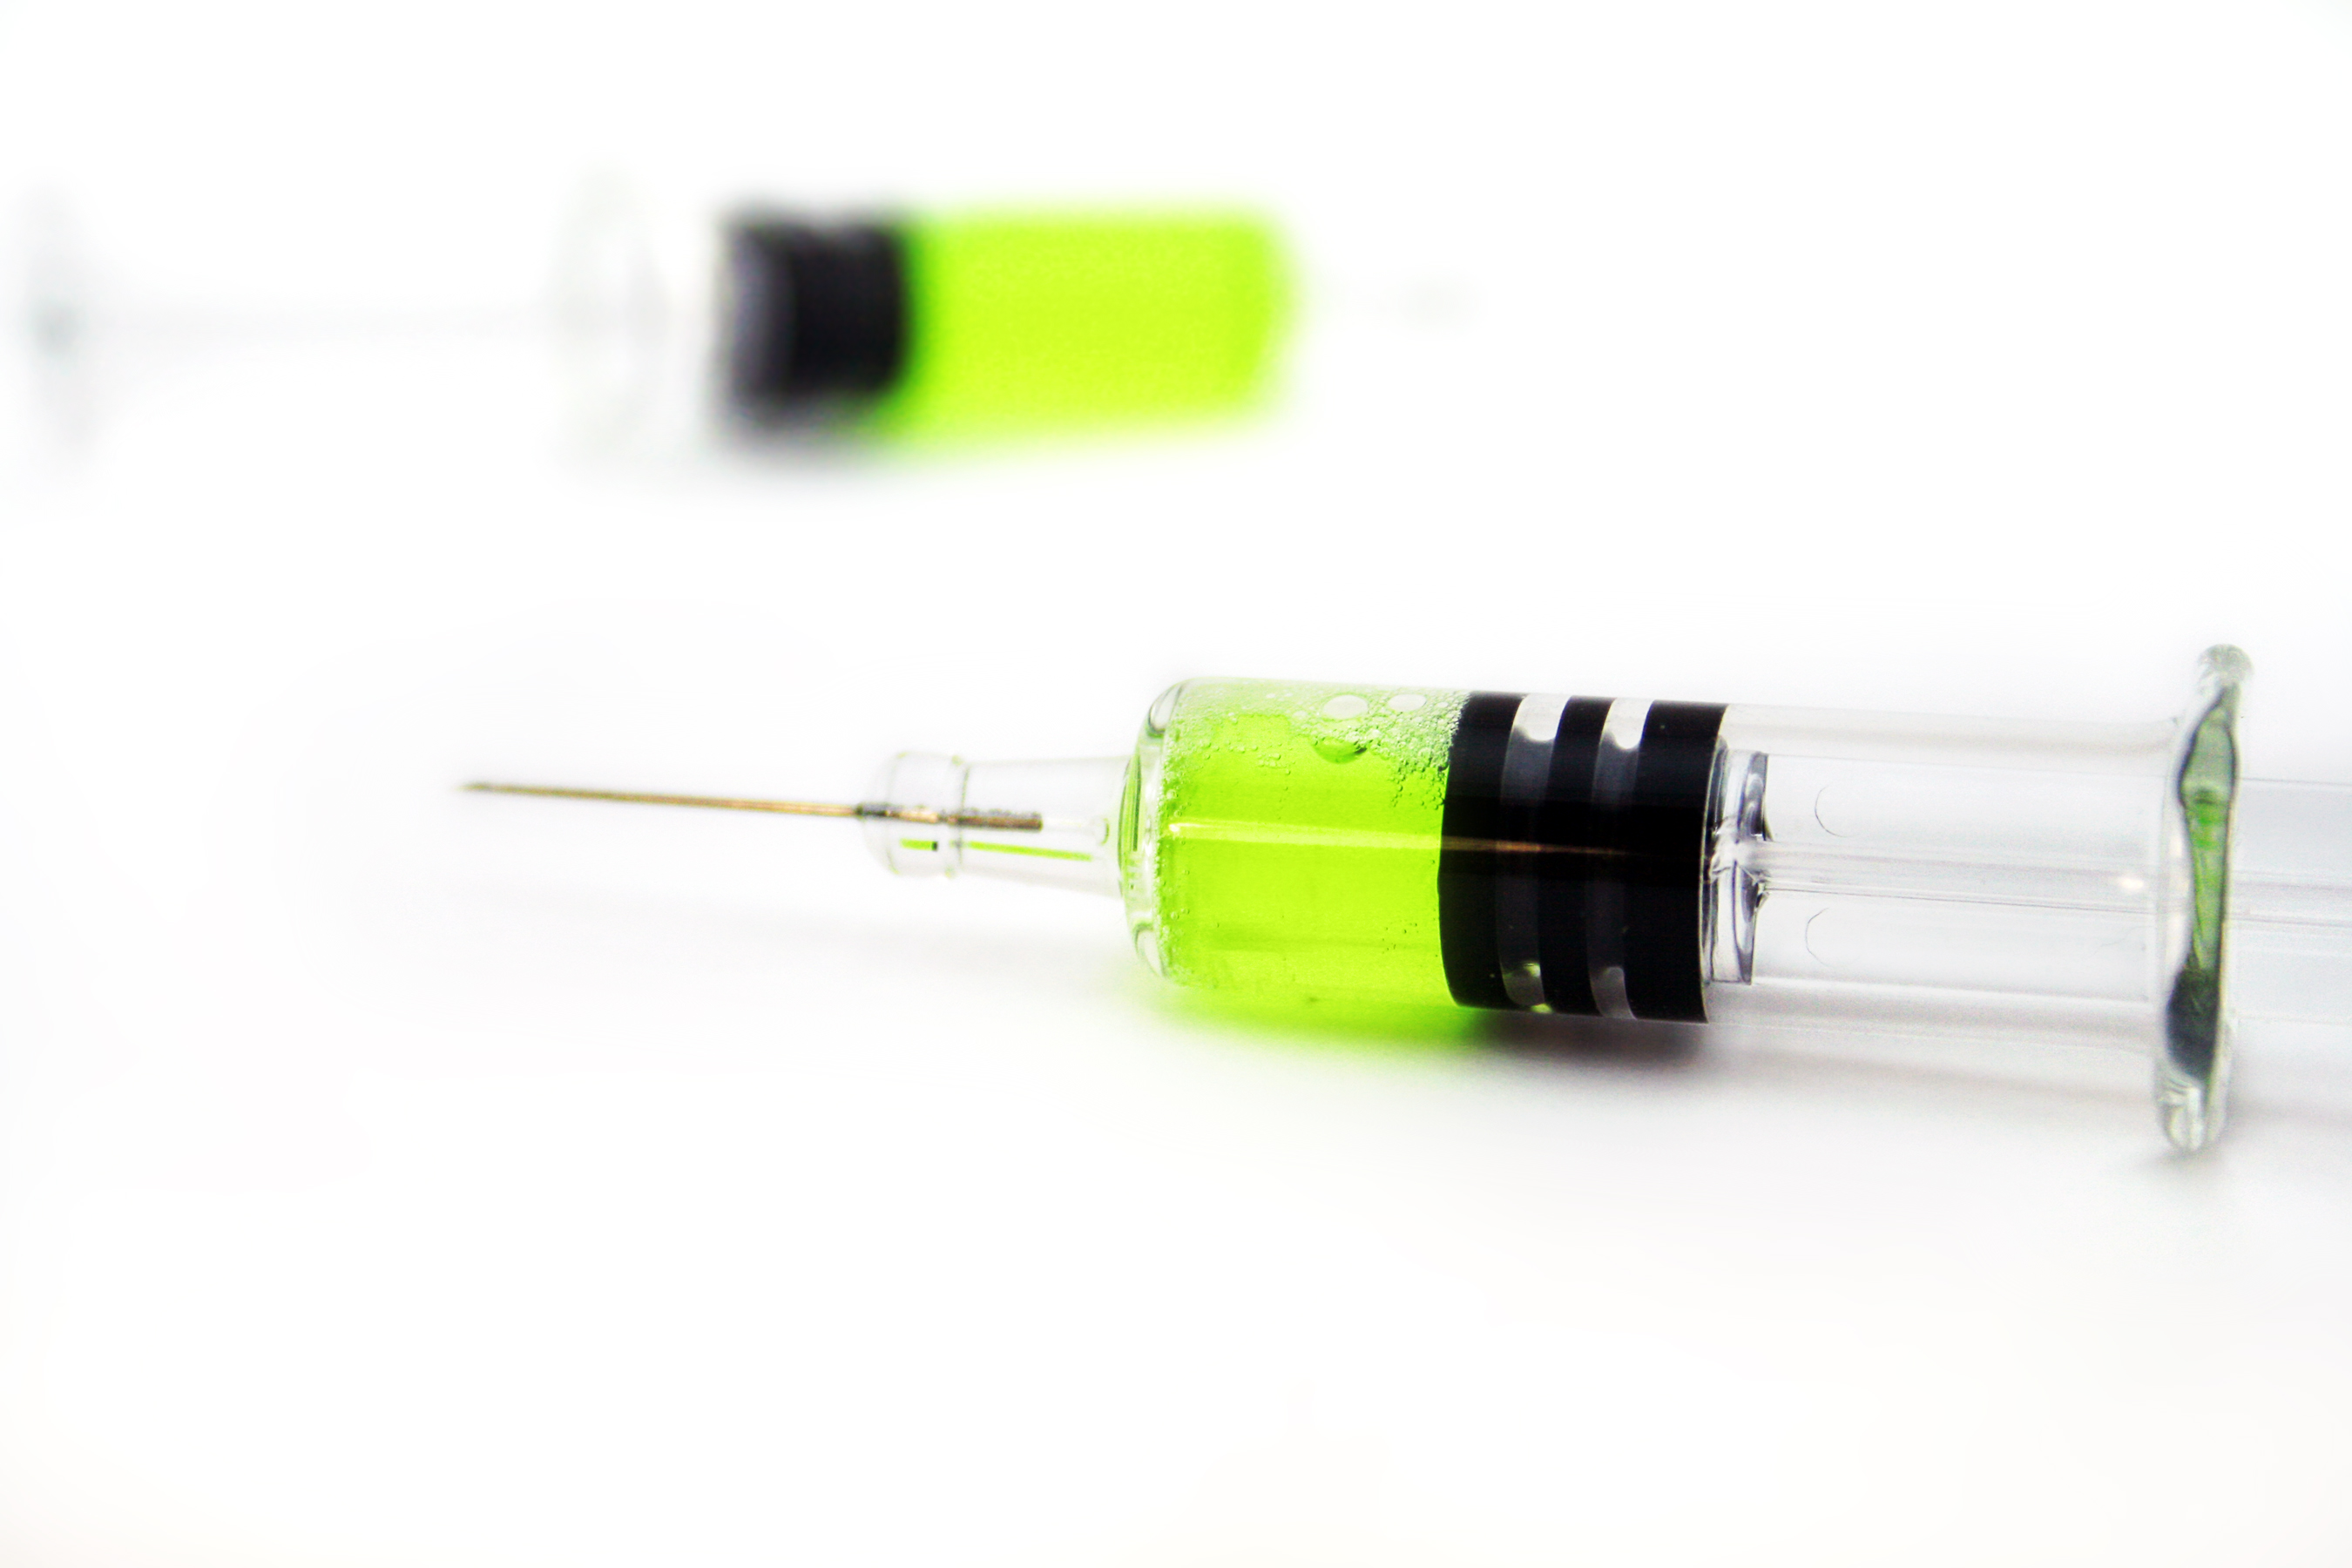 Syringes photo